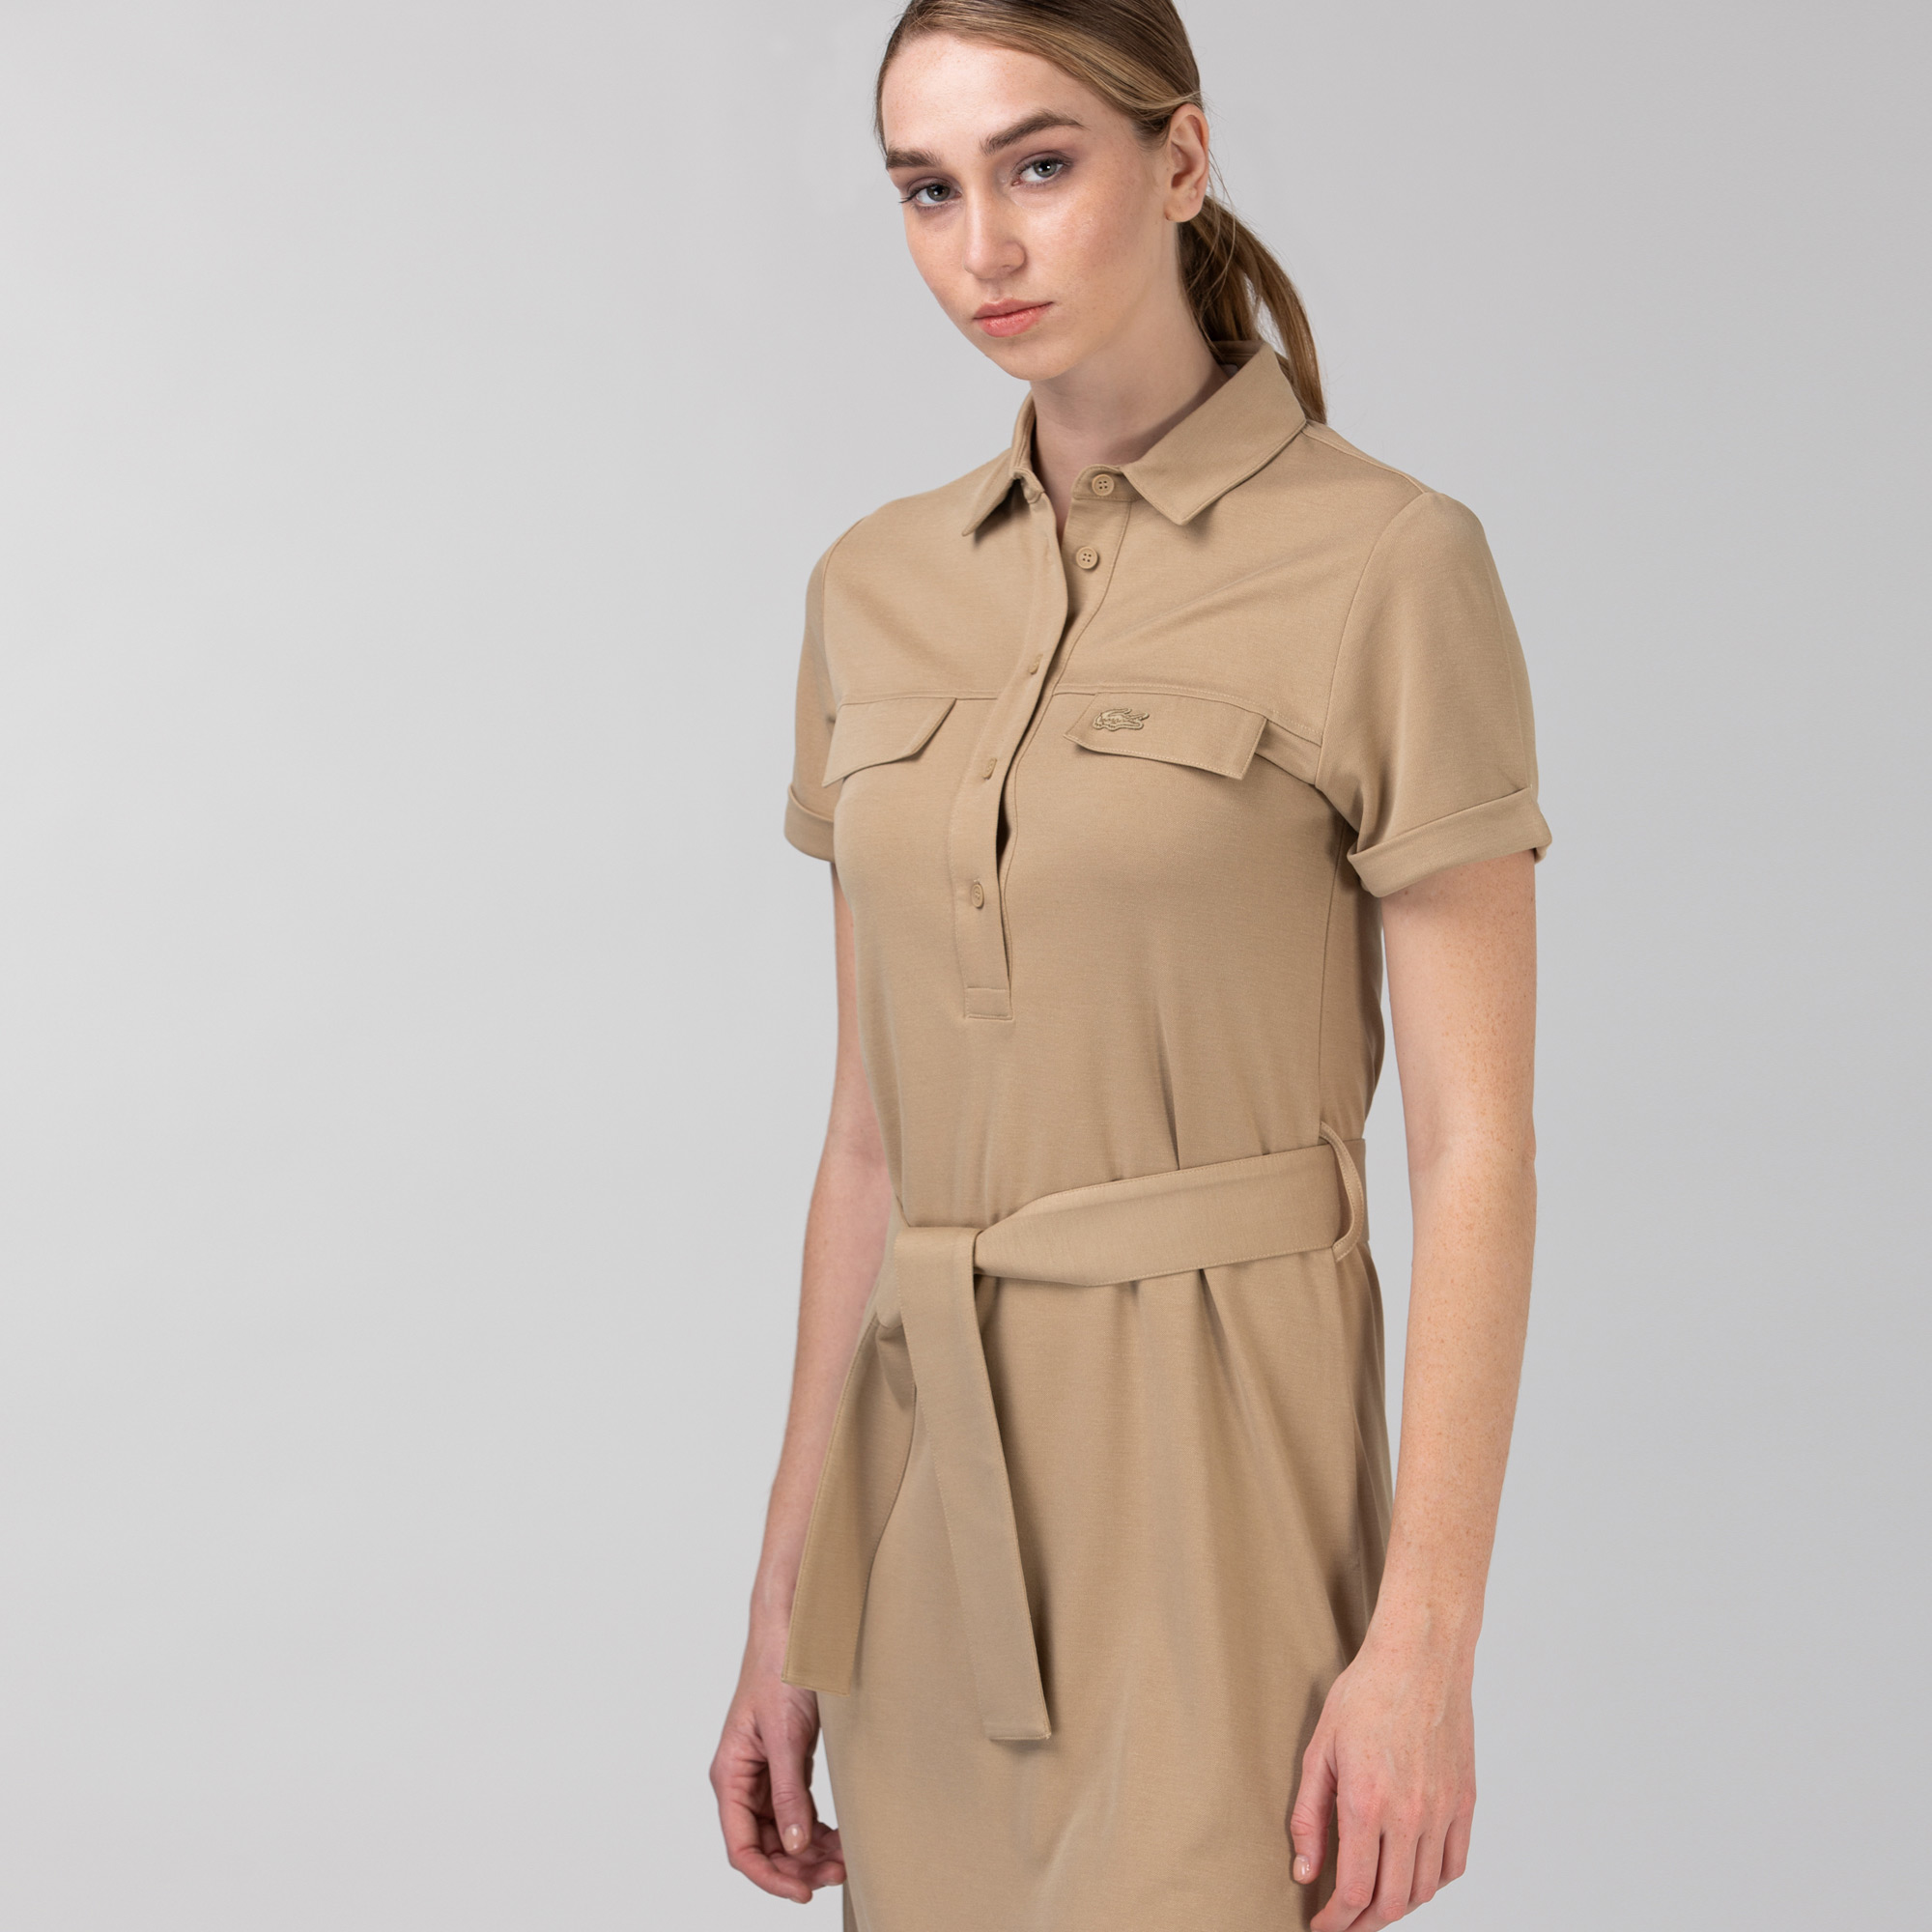 Lacoste Kadın Kısa Kollu Gömlek Yaka Açık Kahverengi Elbise. 3